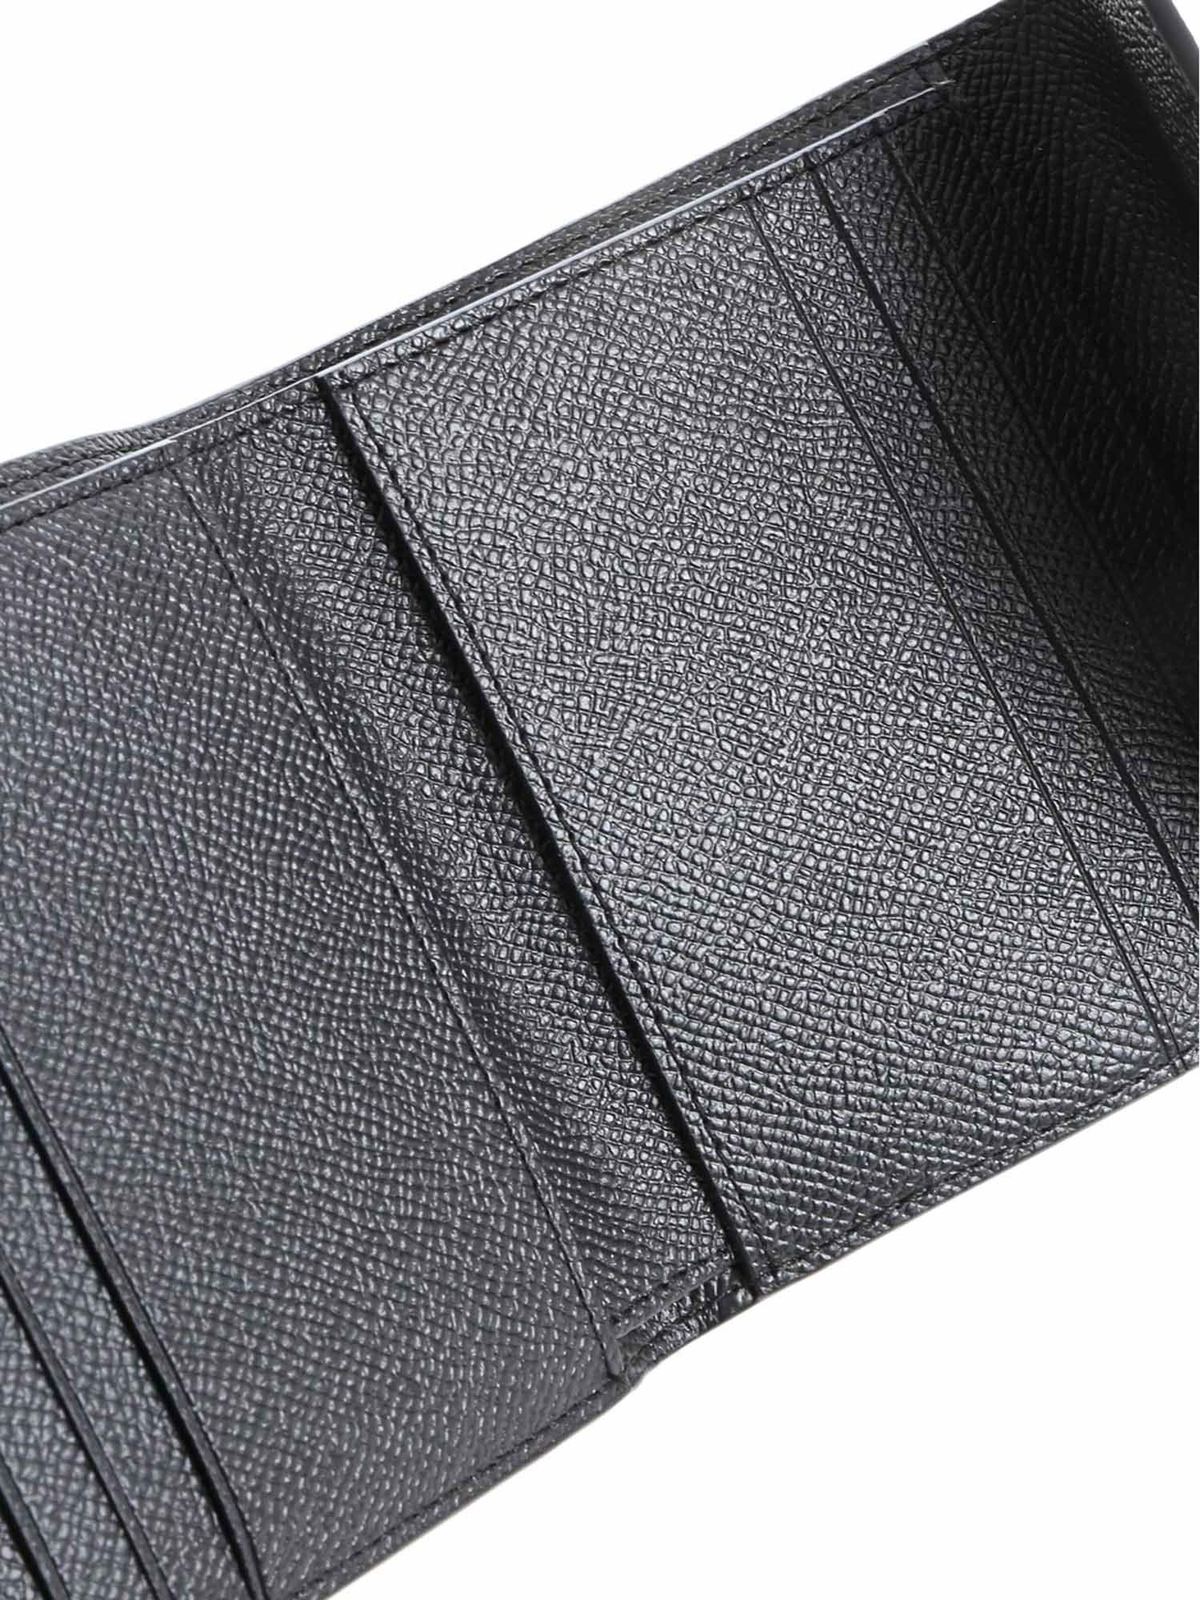 Coach 21035 Shoulder Bag Simple Design Leather for sale online | eBay